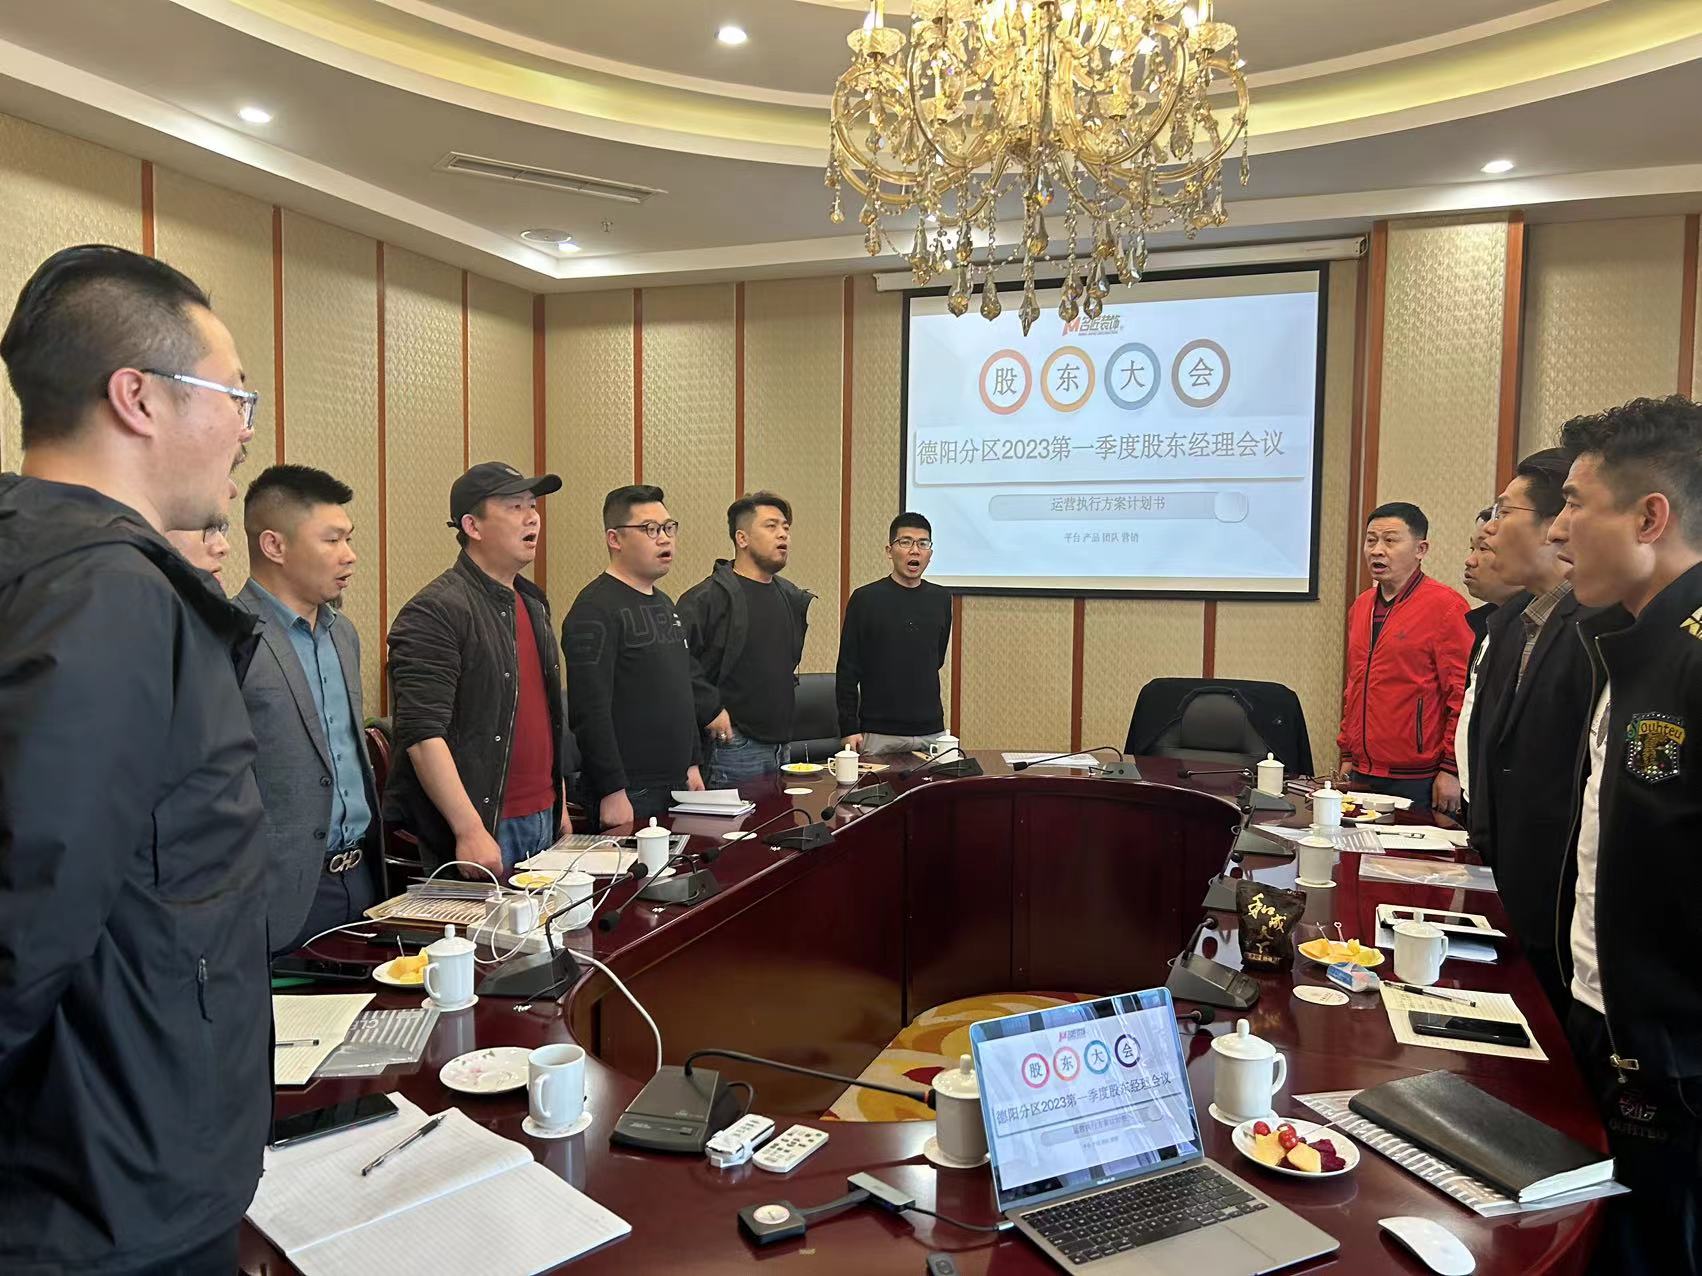 熱烈祝賀“廣州名匠集團·德陽大區”2023第一季度股東經理大會取得圓滿成功